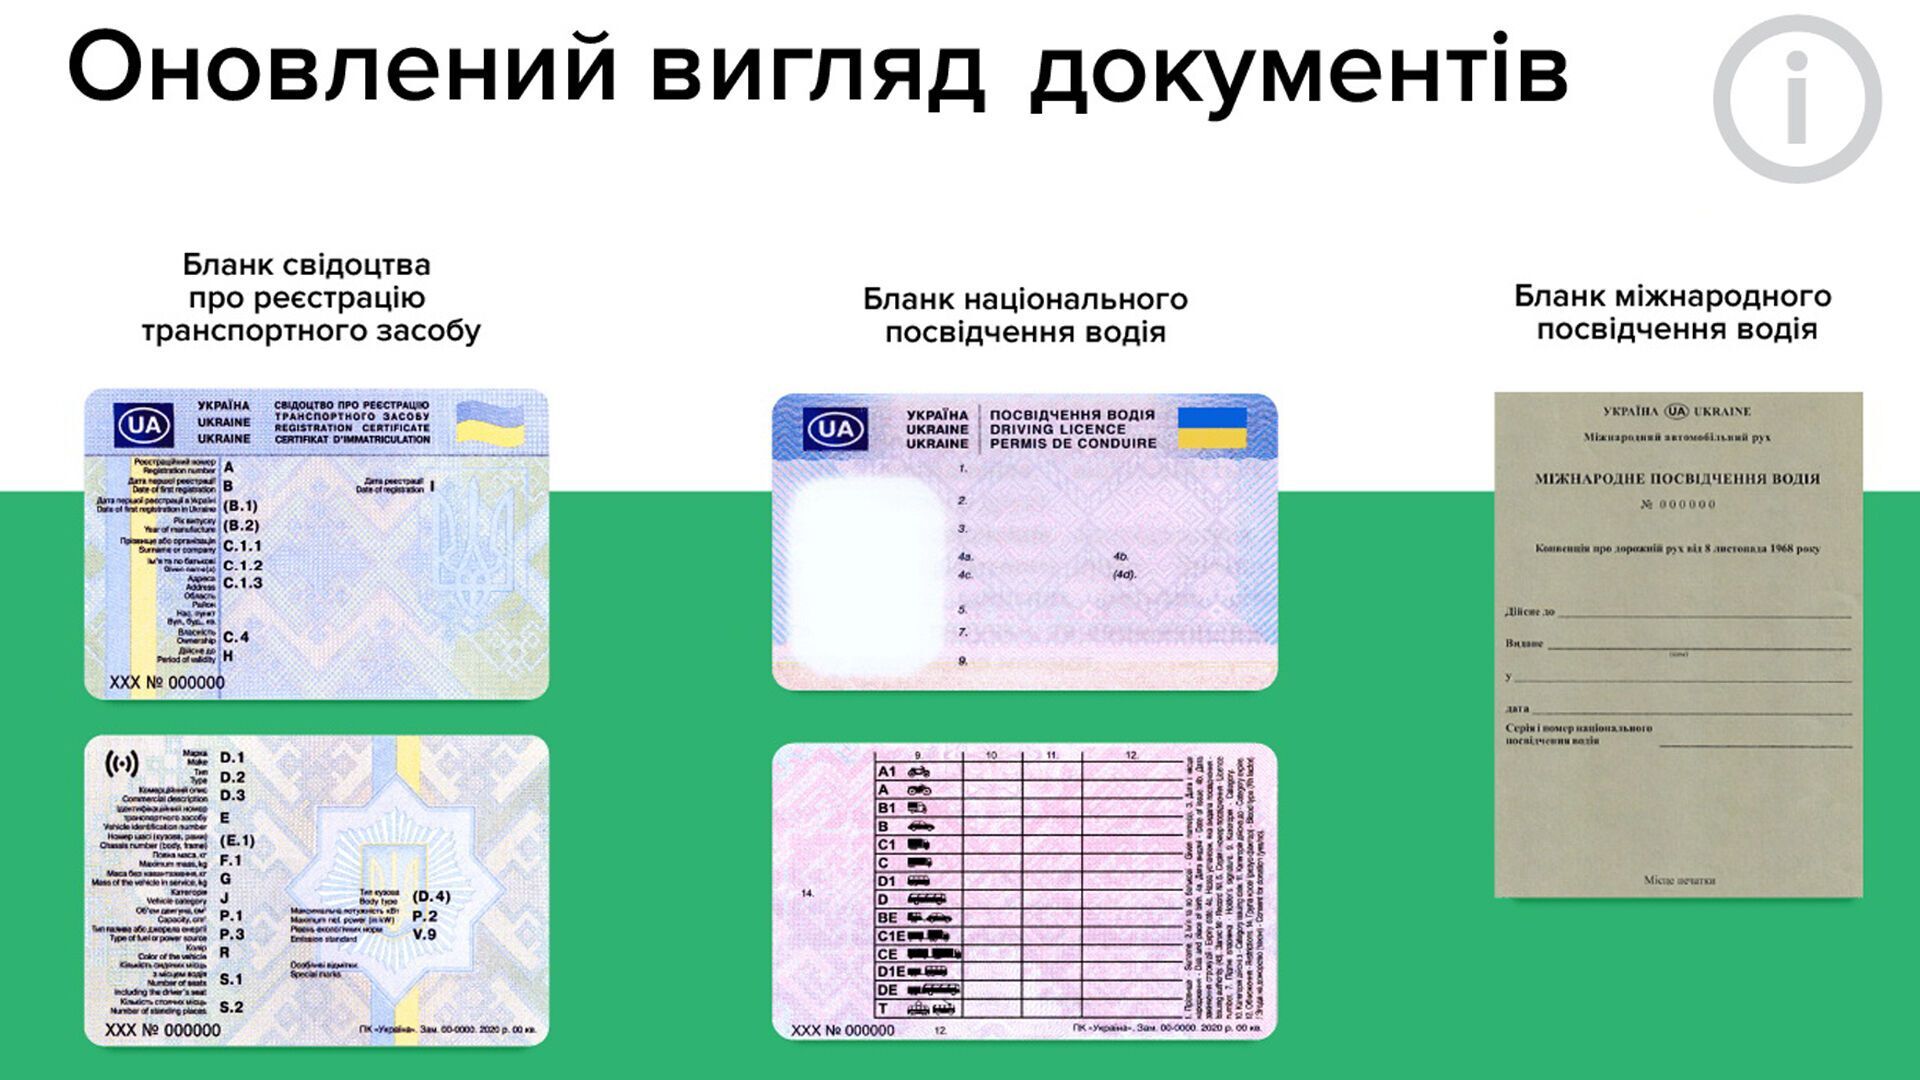 Новые бланки водительских удостоверений и свидетельства о регистрации транспортного средства